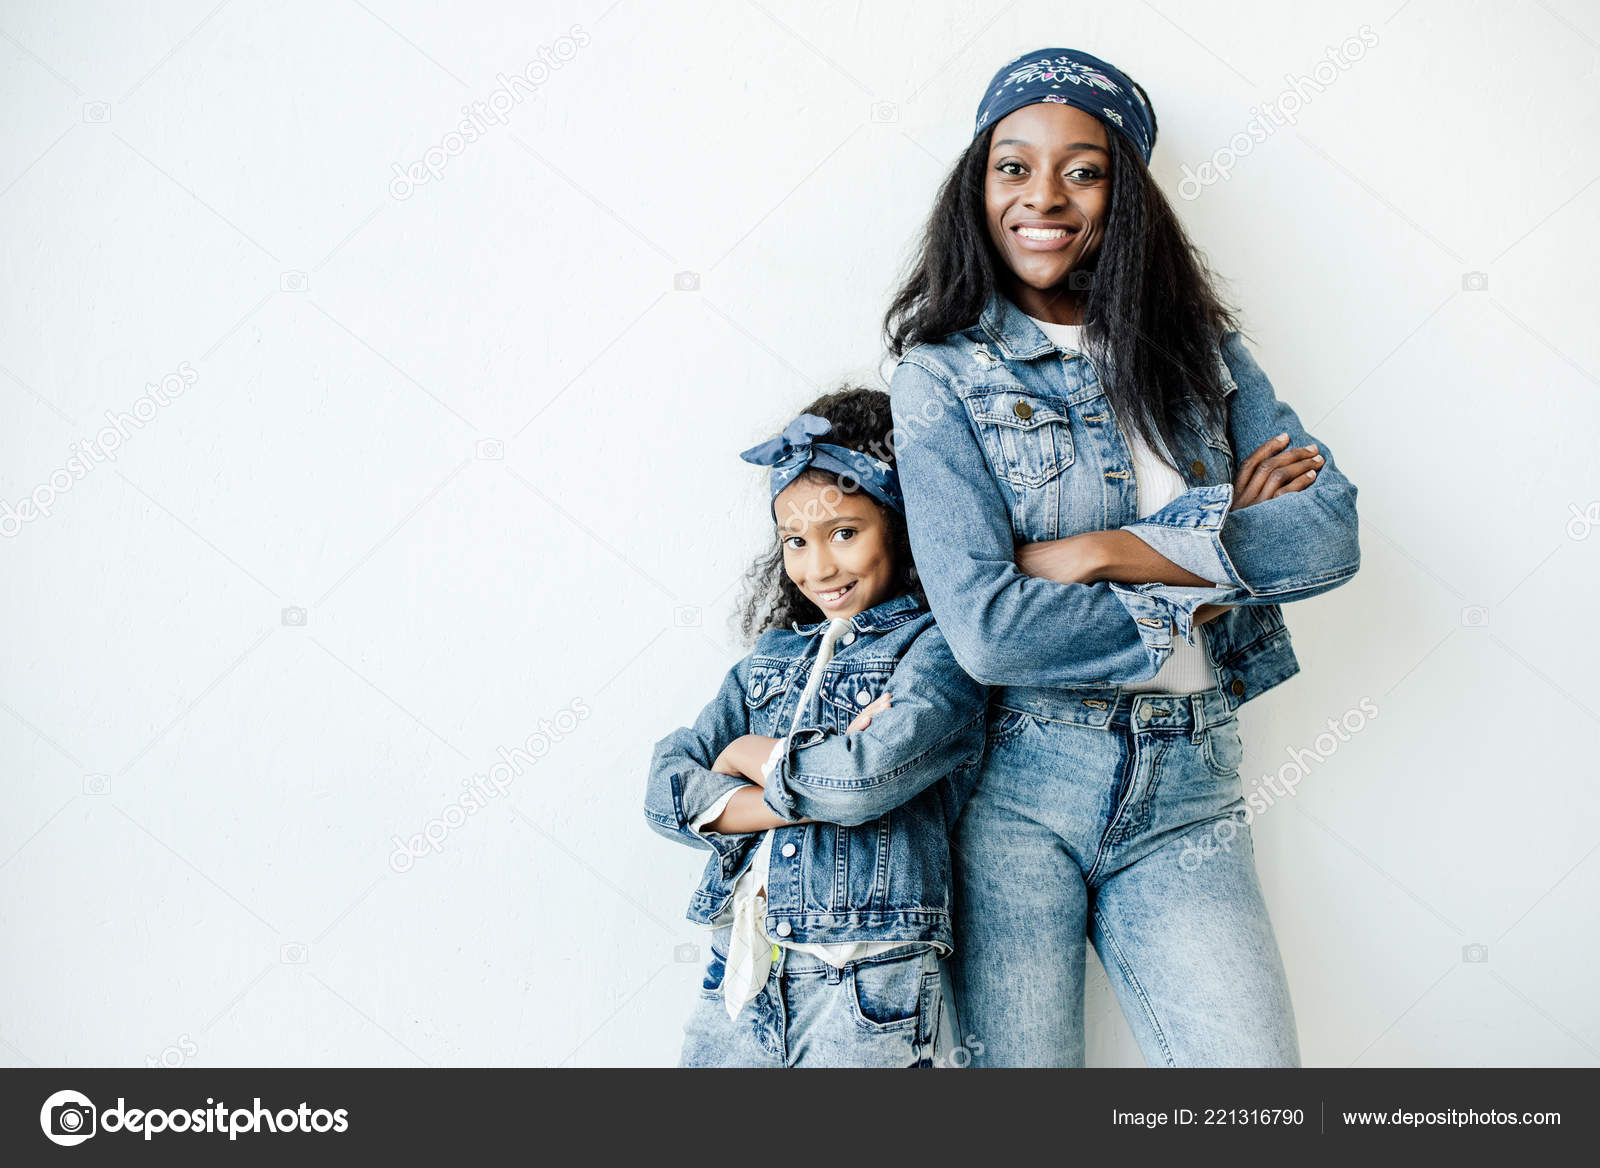 News | Jinky Art Photography | Children photography poses, Photography poses  family, Daughter photo ideas